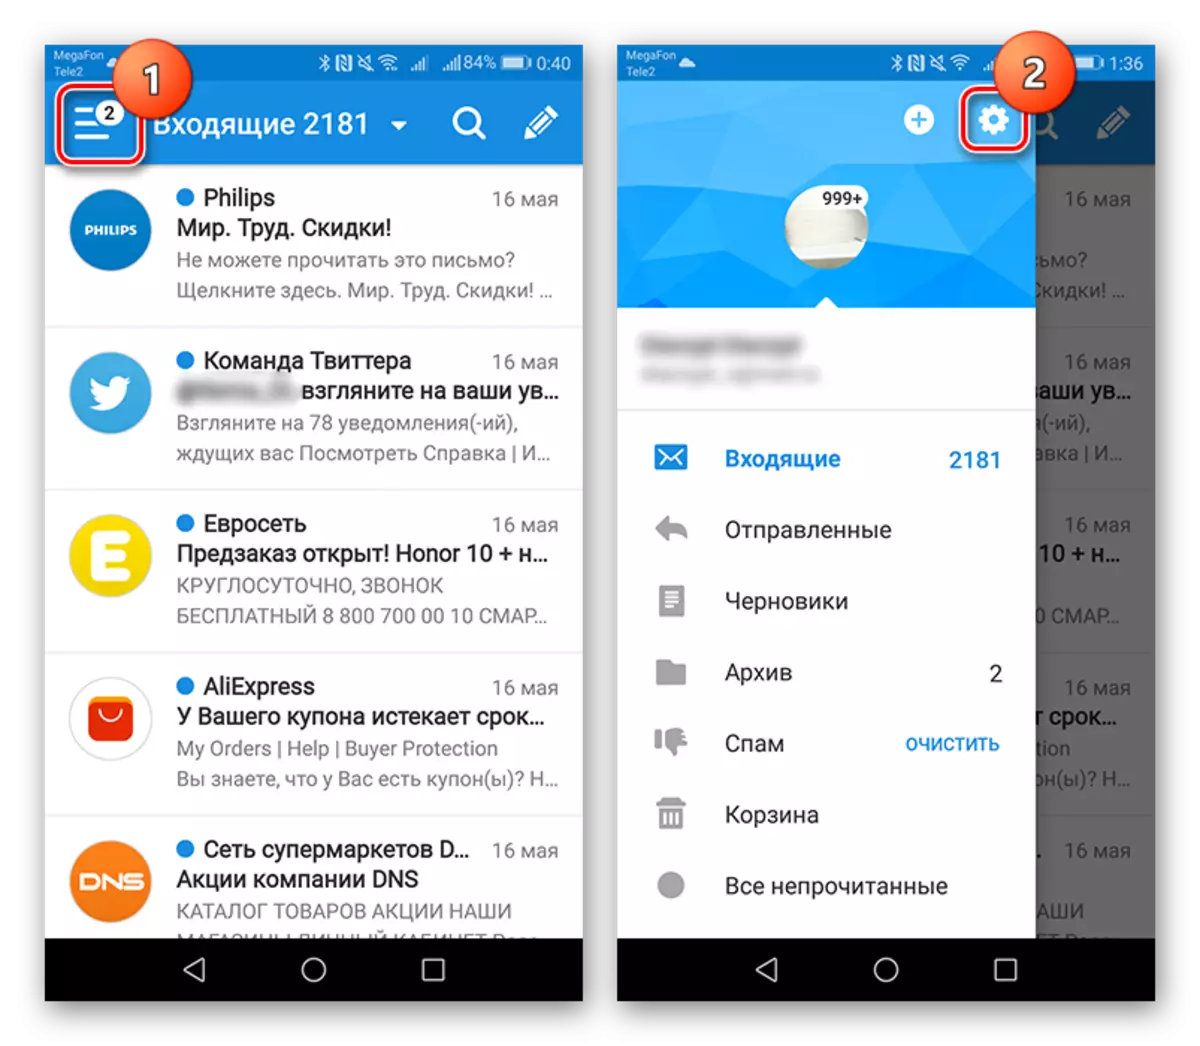 Как поменять на русский язык в телеграмме с английского андроиде фото 106